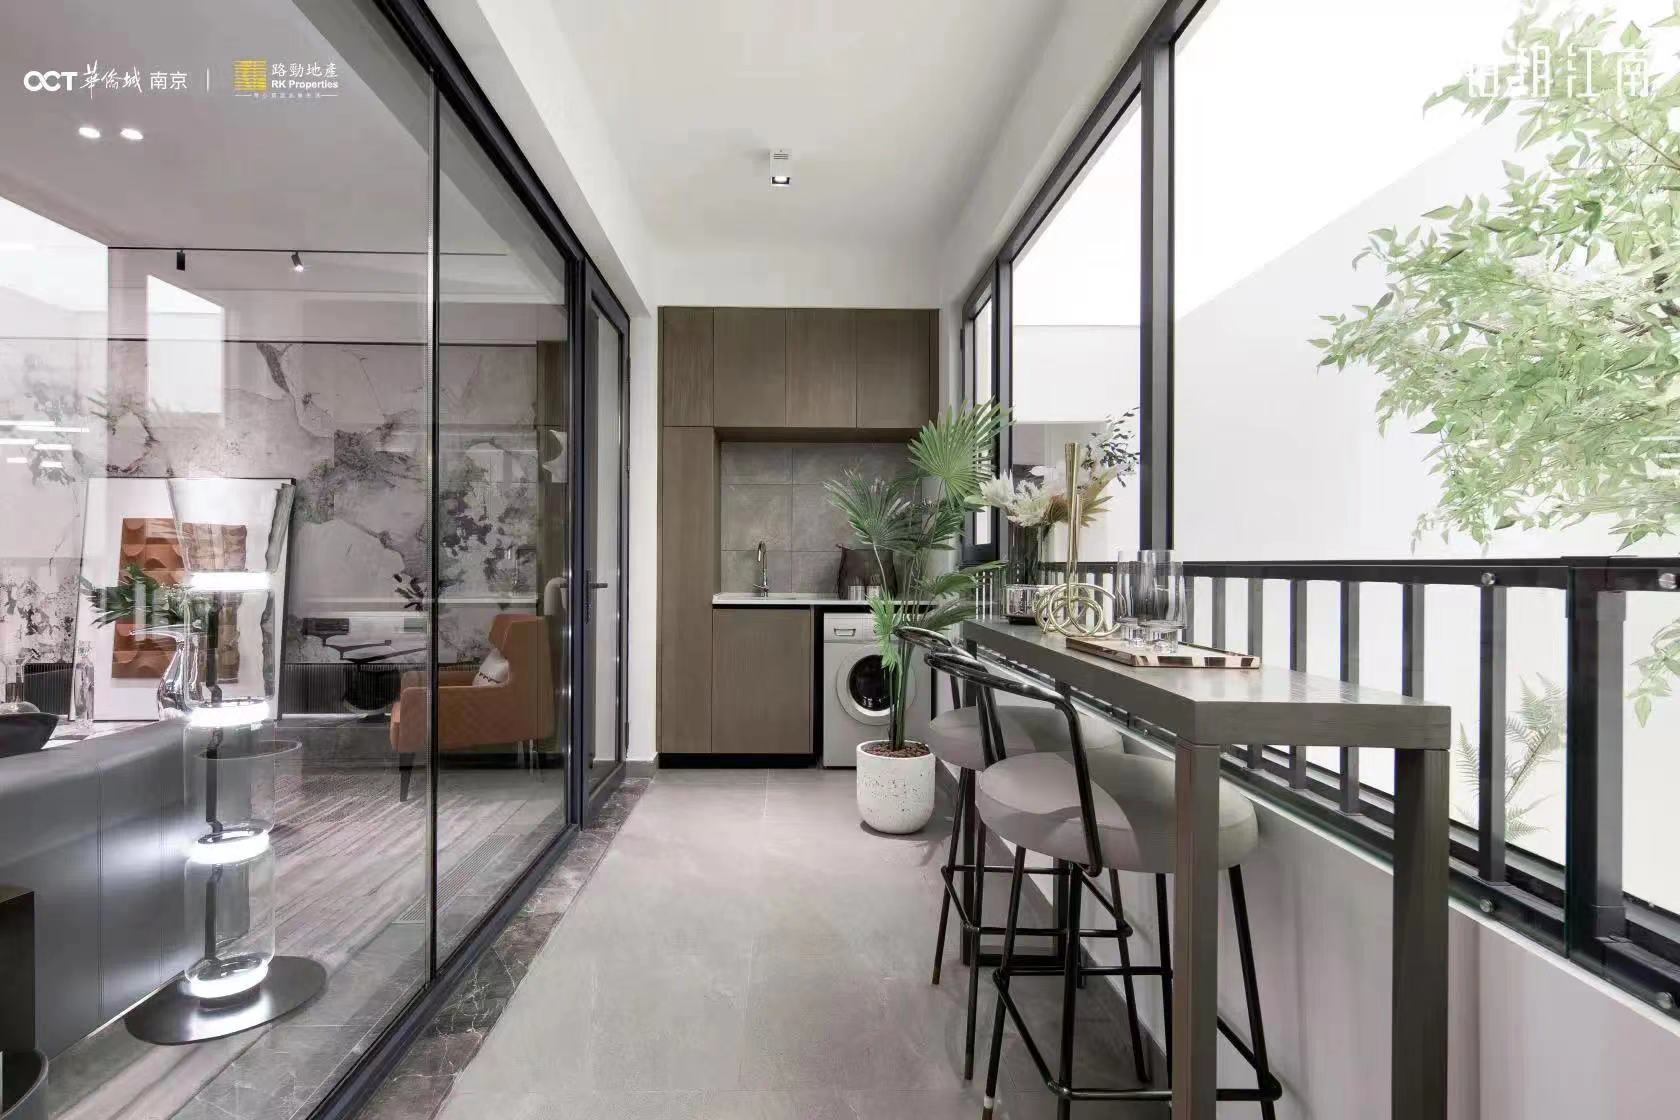 科技住宅约99㎡神户型 空间的合理使用 堪比豪宅的舒适度_中国网地产